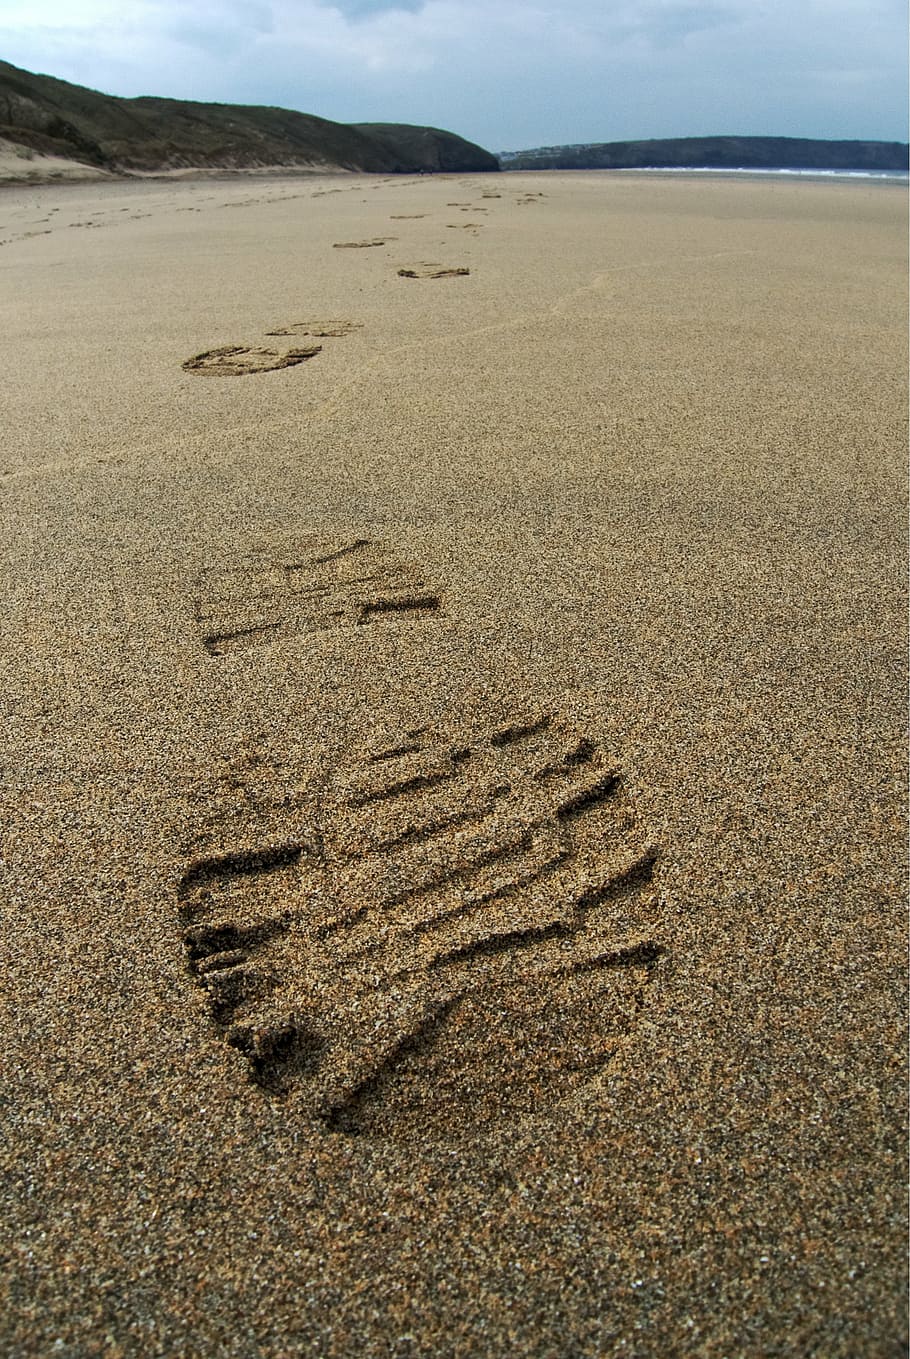 cetakan sepatu, fotografi pasir, jejak kaki, pasir, trek, cetak, kaki, boot, pantai, perjalanan